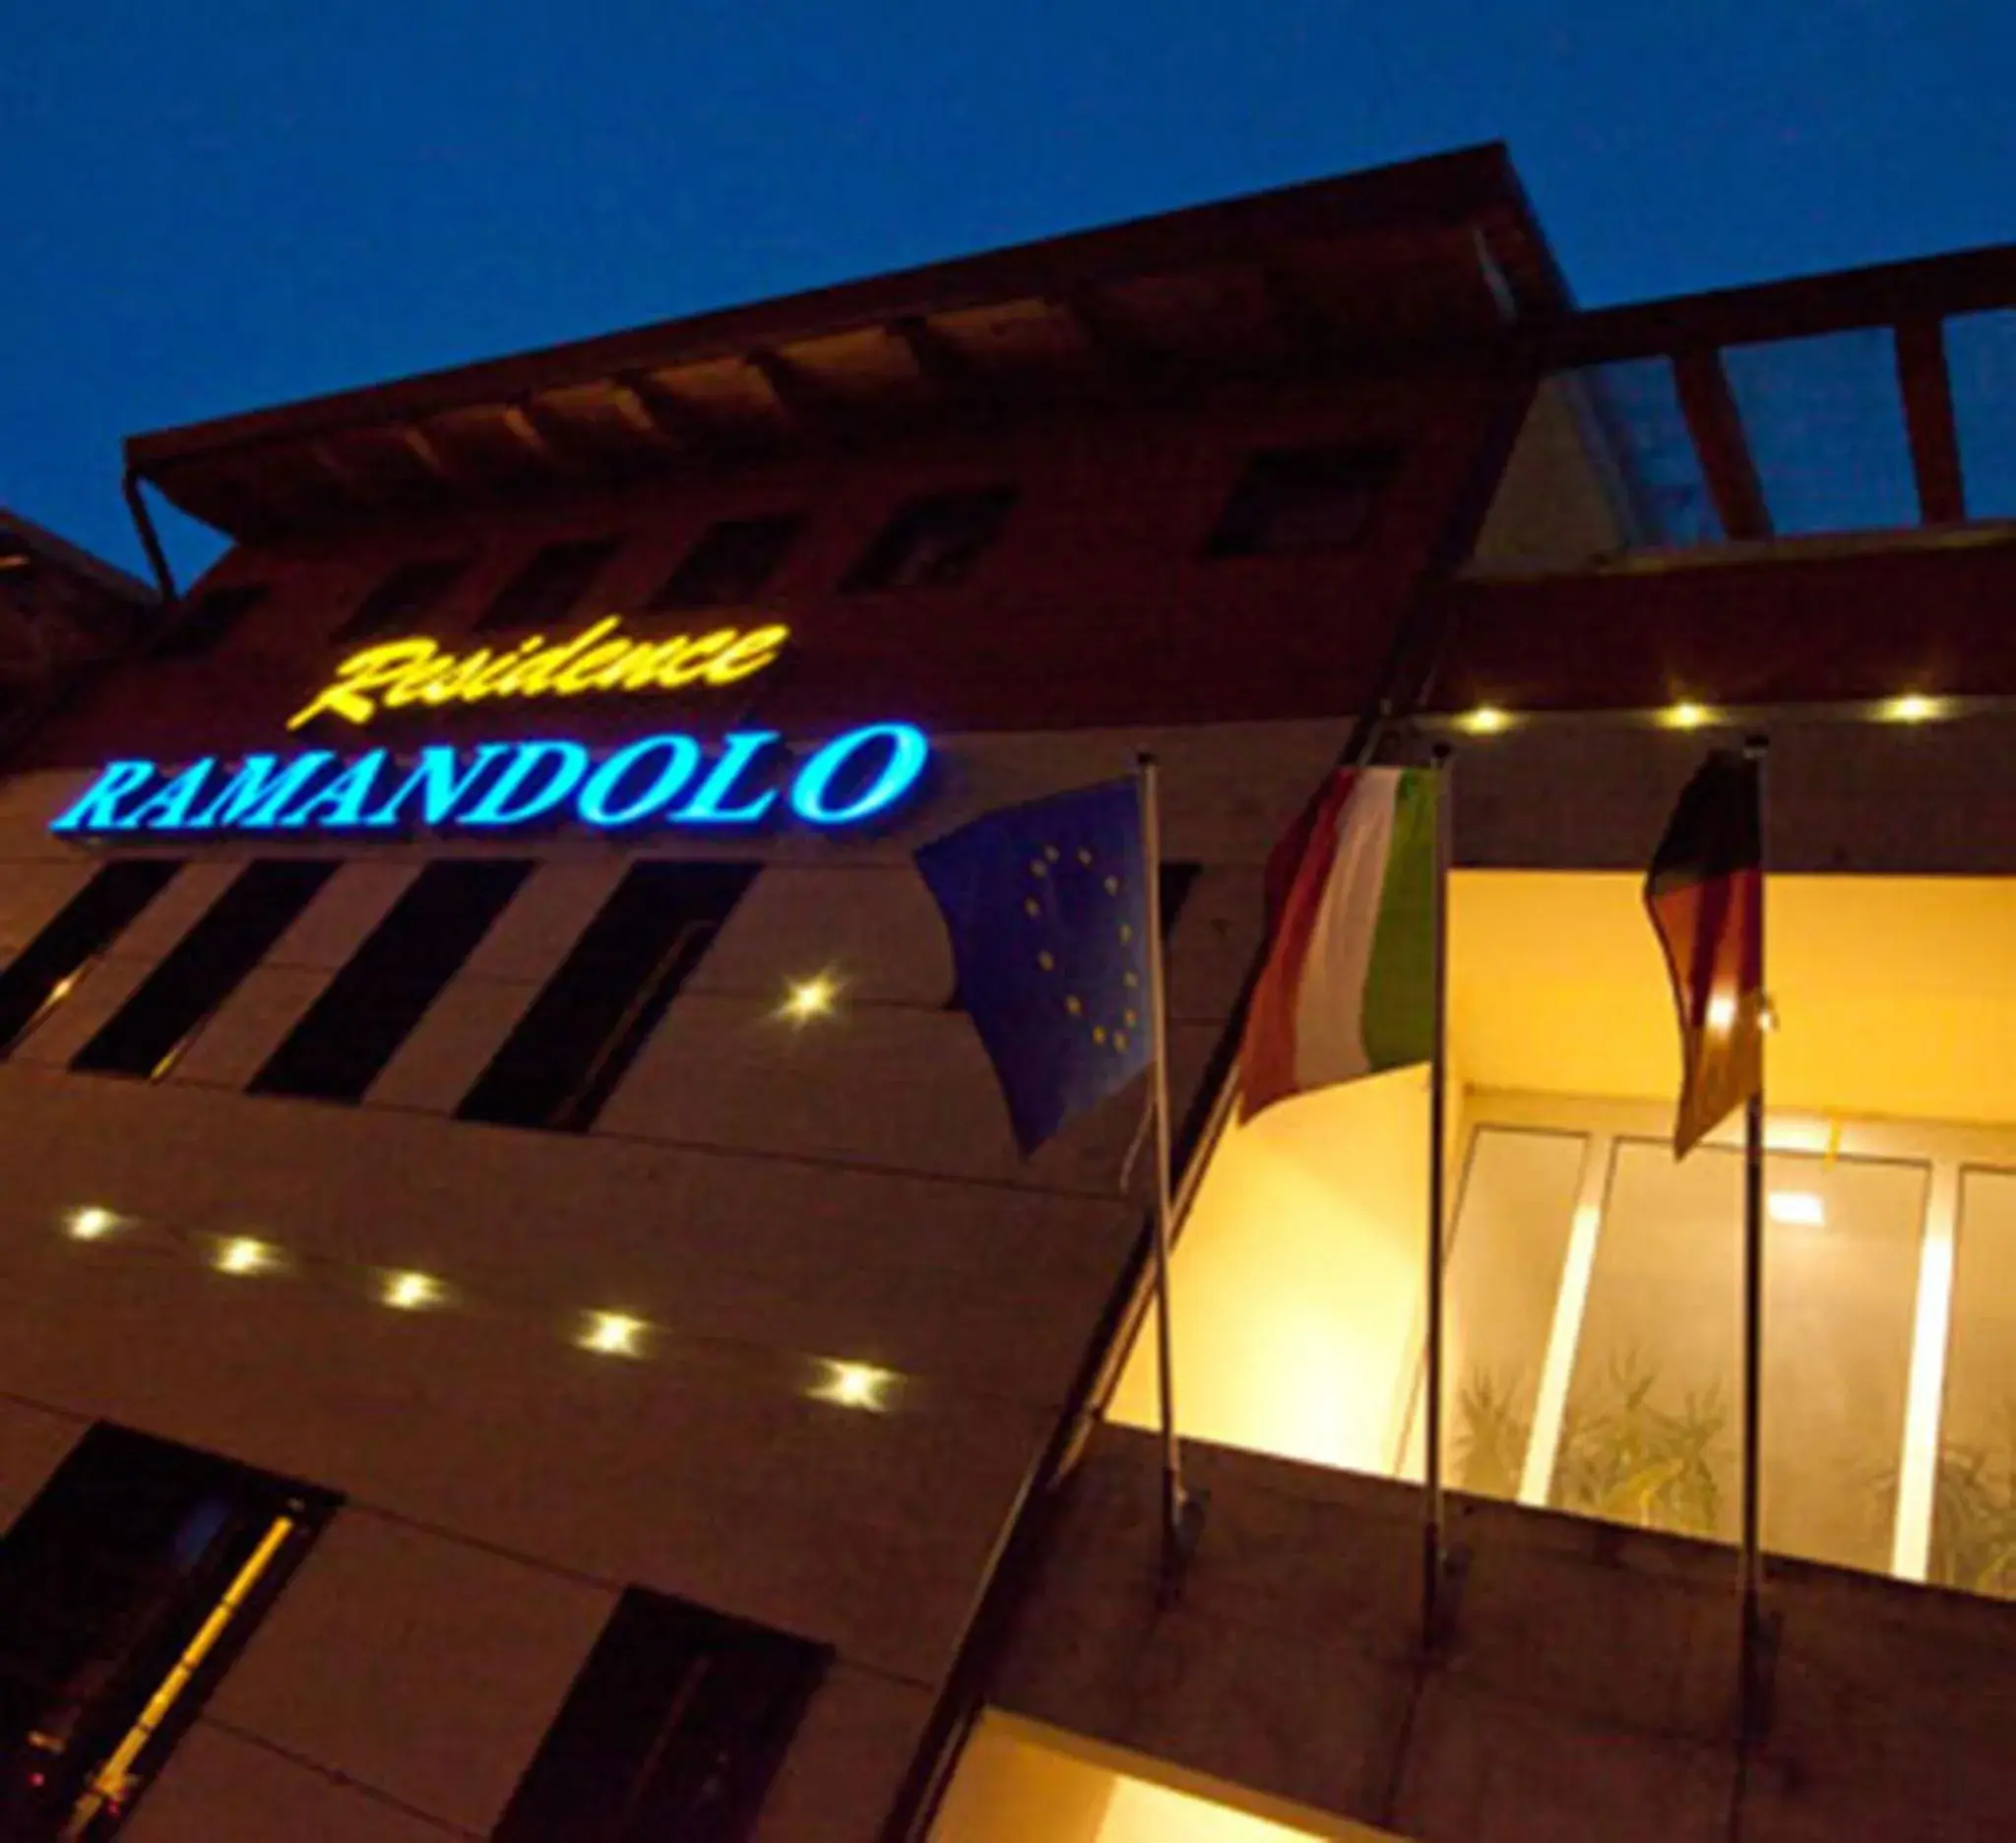 Facade/entrance, Property Building in Hotel Ristorante Ramandolo